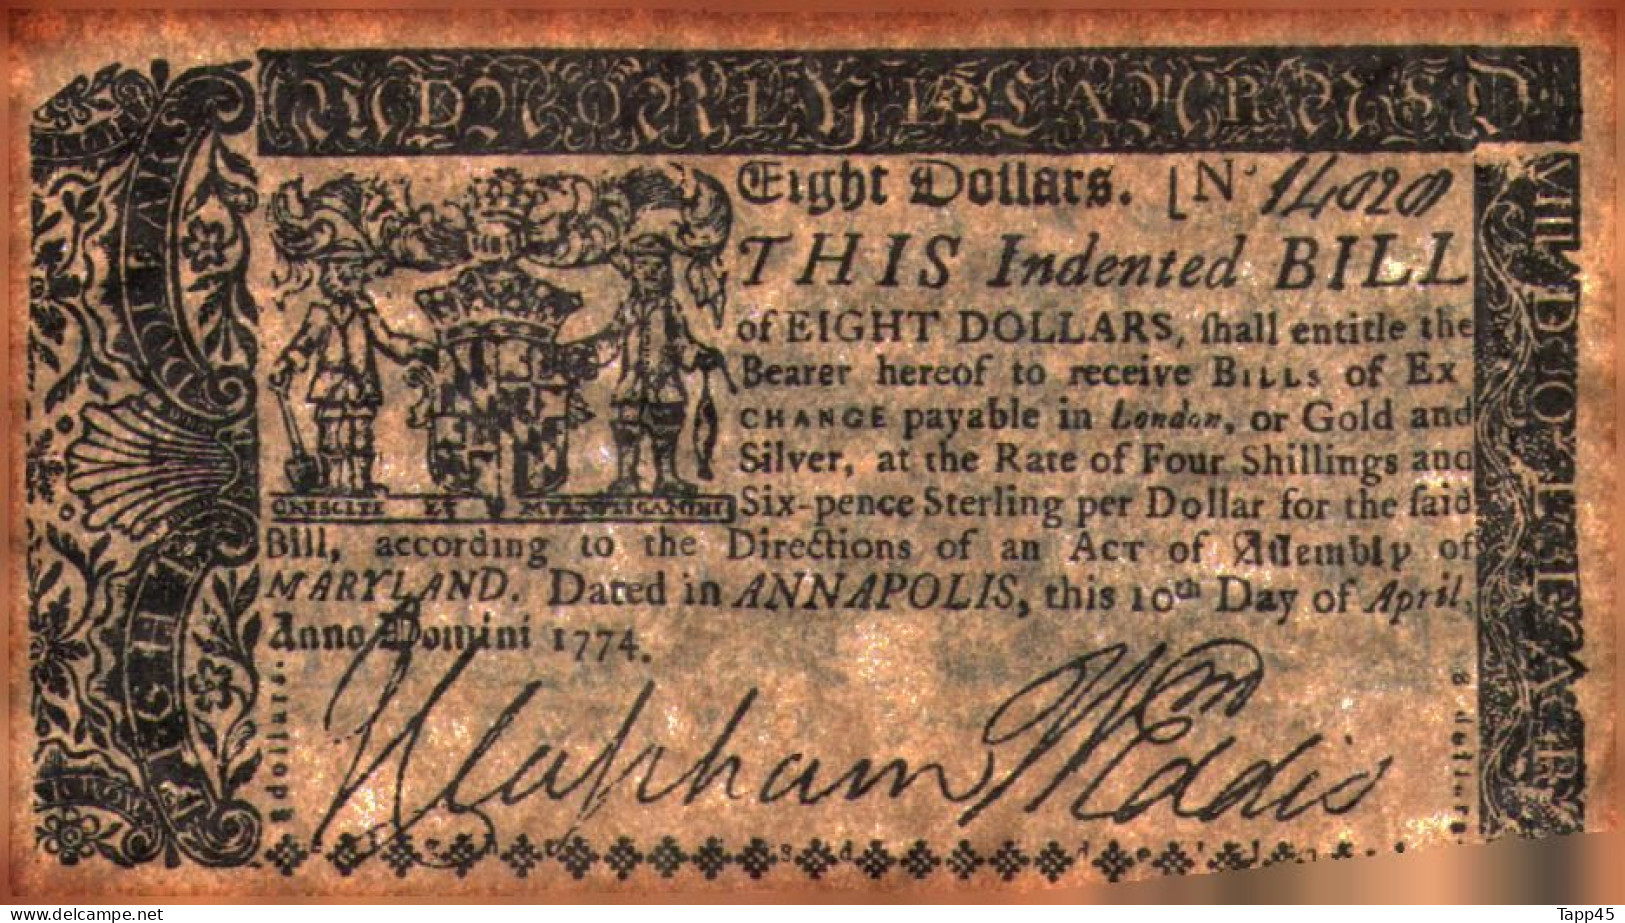 Surprenant Lot de 14 billets état d'Amérique fondé en 1776 (peut être des copies mais anciennes vue le papier) Réf:C03